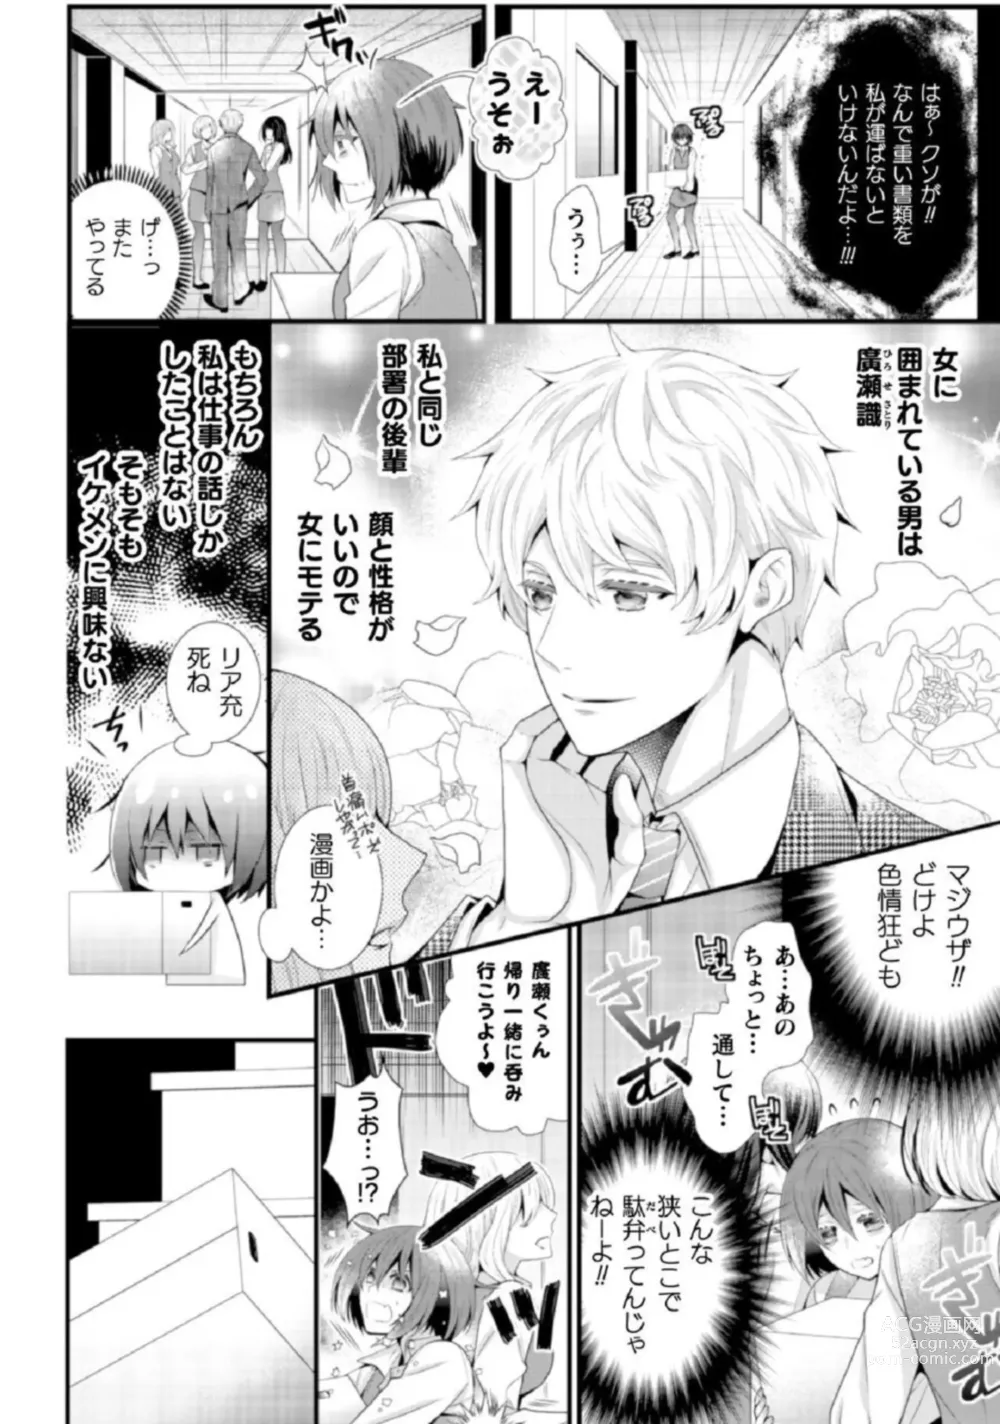 Page 10 of manga Shokorashukureansorojī Ibitsuai ～ Yandere Kareshi no Omoi ai ni Kakowarete ～Vol.2